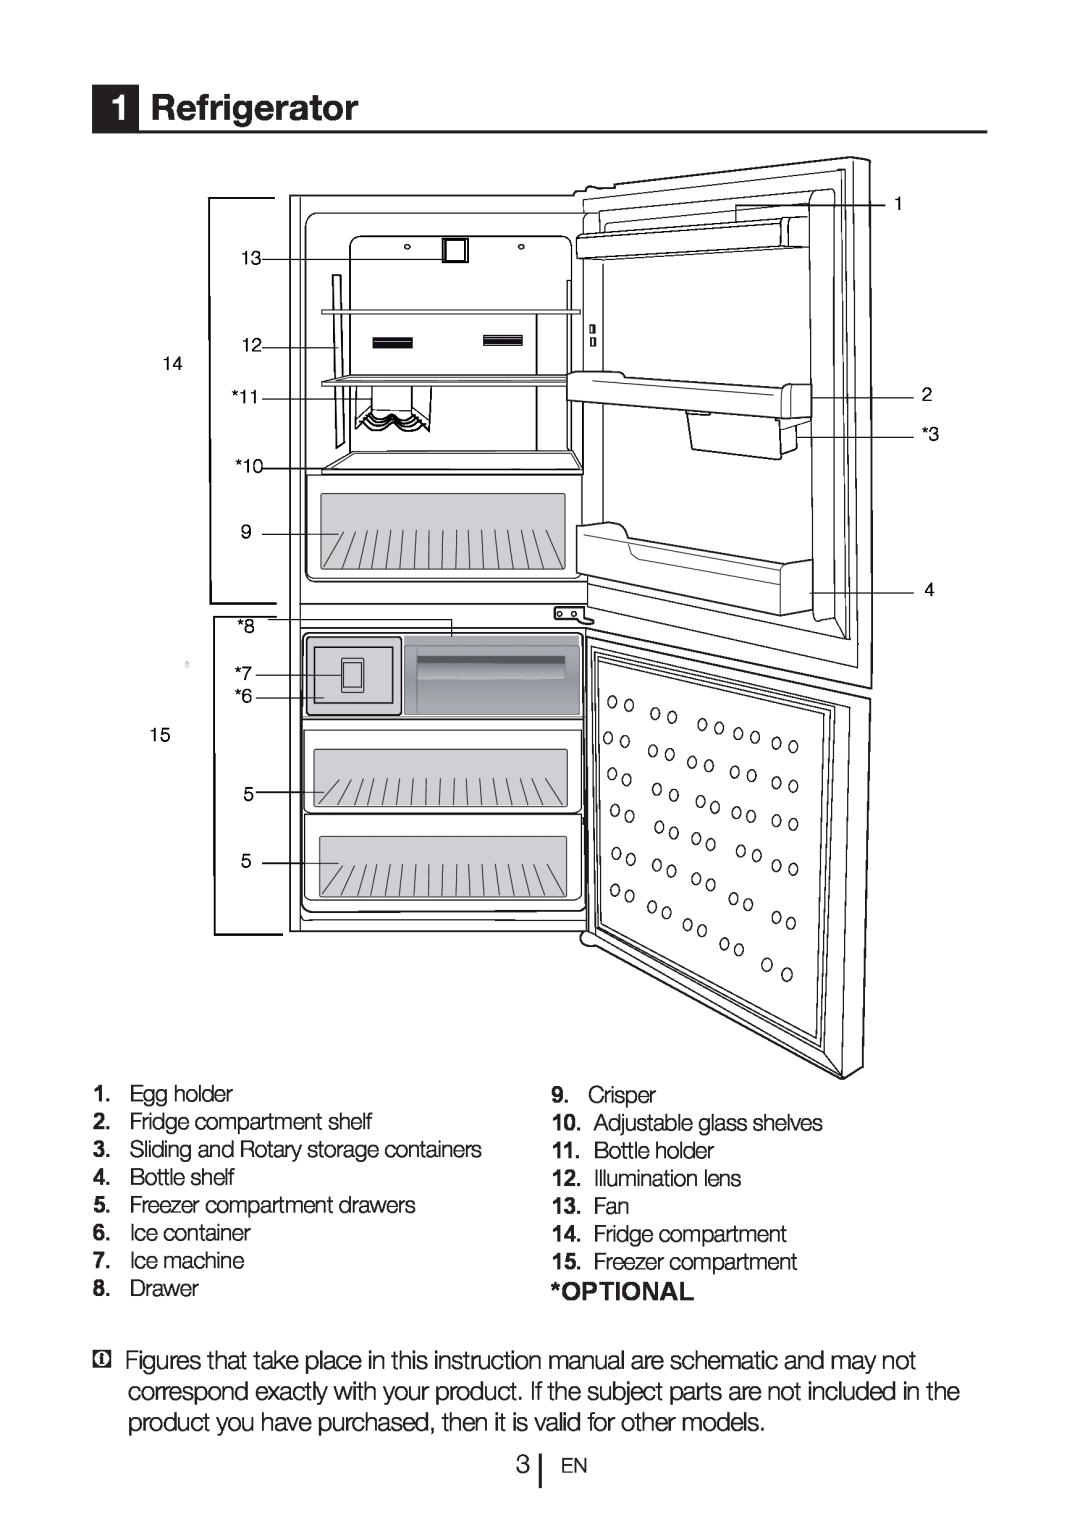 Blomberg BRFB1800SSIM Refrigerator, Optional, Egg holder, Crisper, Fridge compartment shelf, Bottle holder, Bottle shelf 